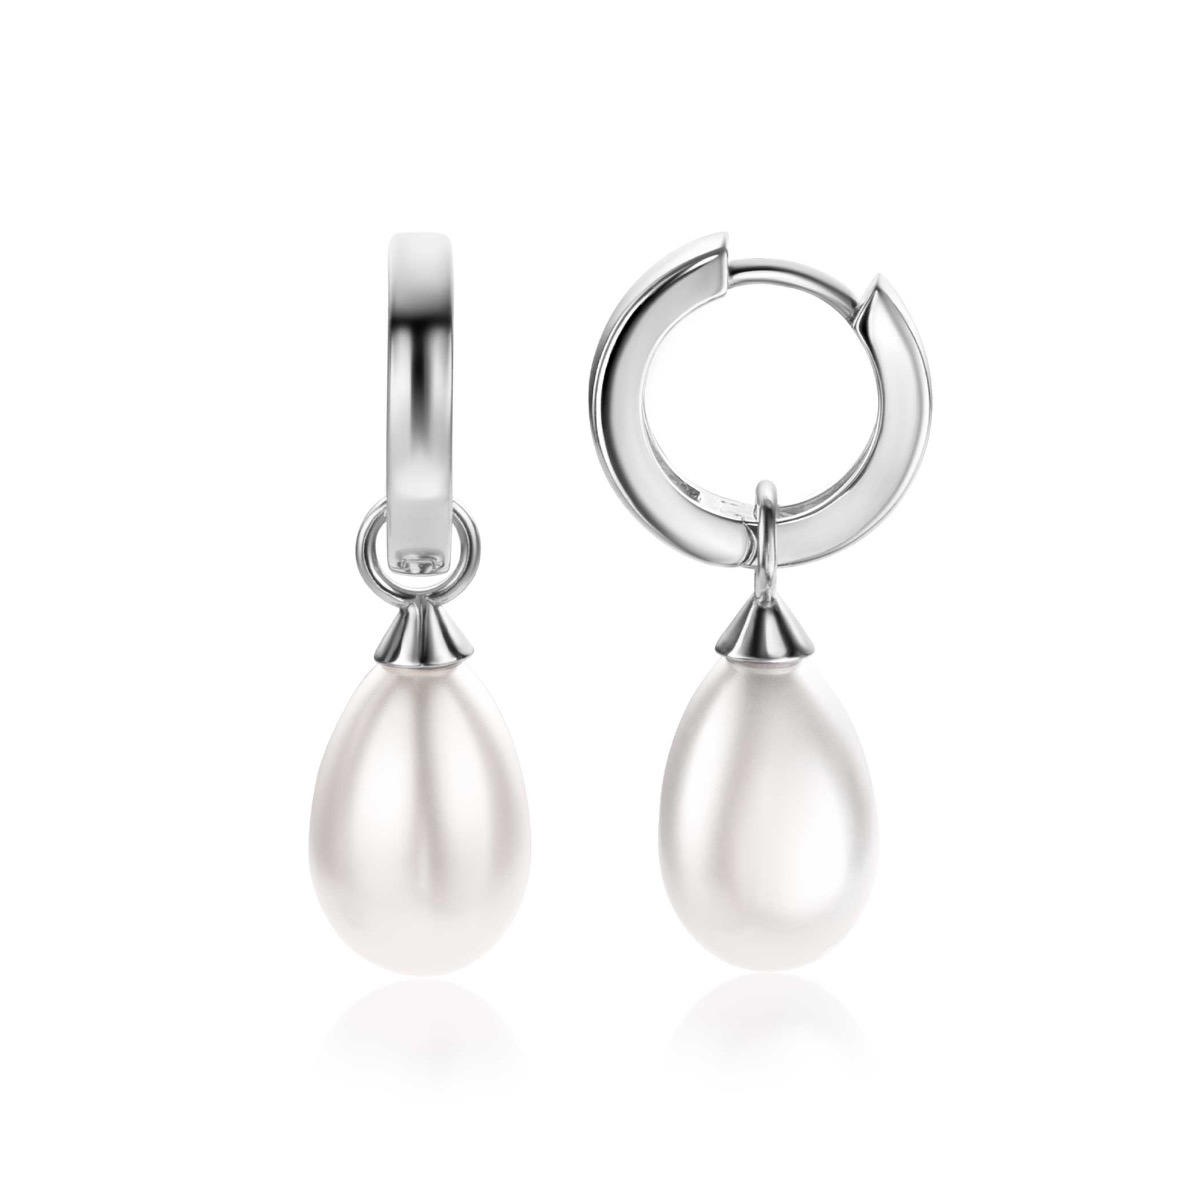 15mm ZINZI Sterling Silver Earrings Pendants Pearl White in Pear-shape ZICH355W (excl. hoop earrings)